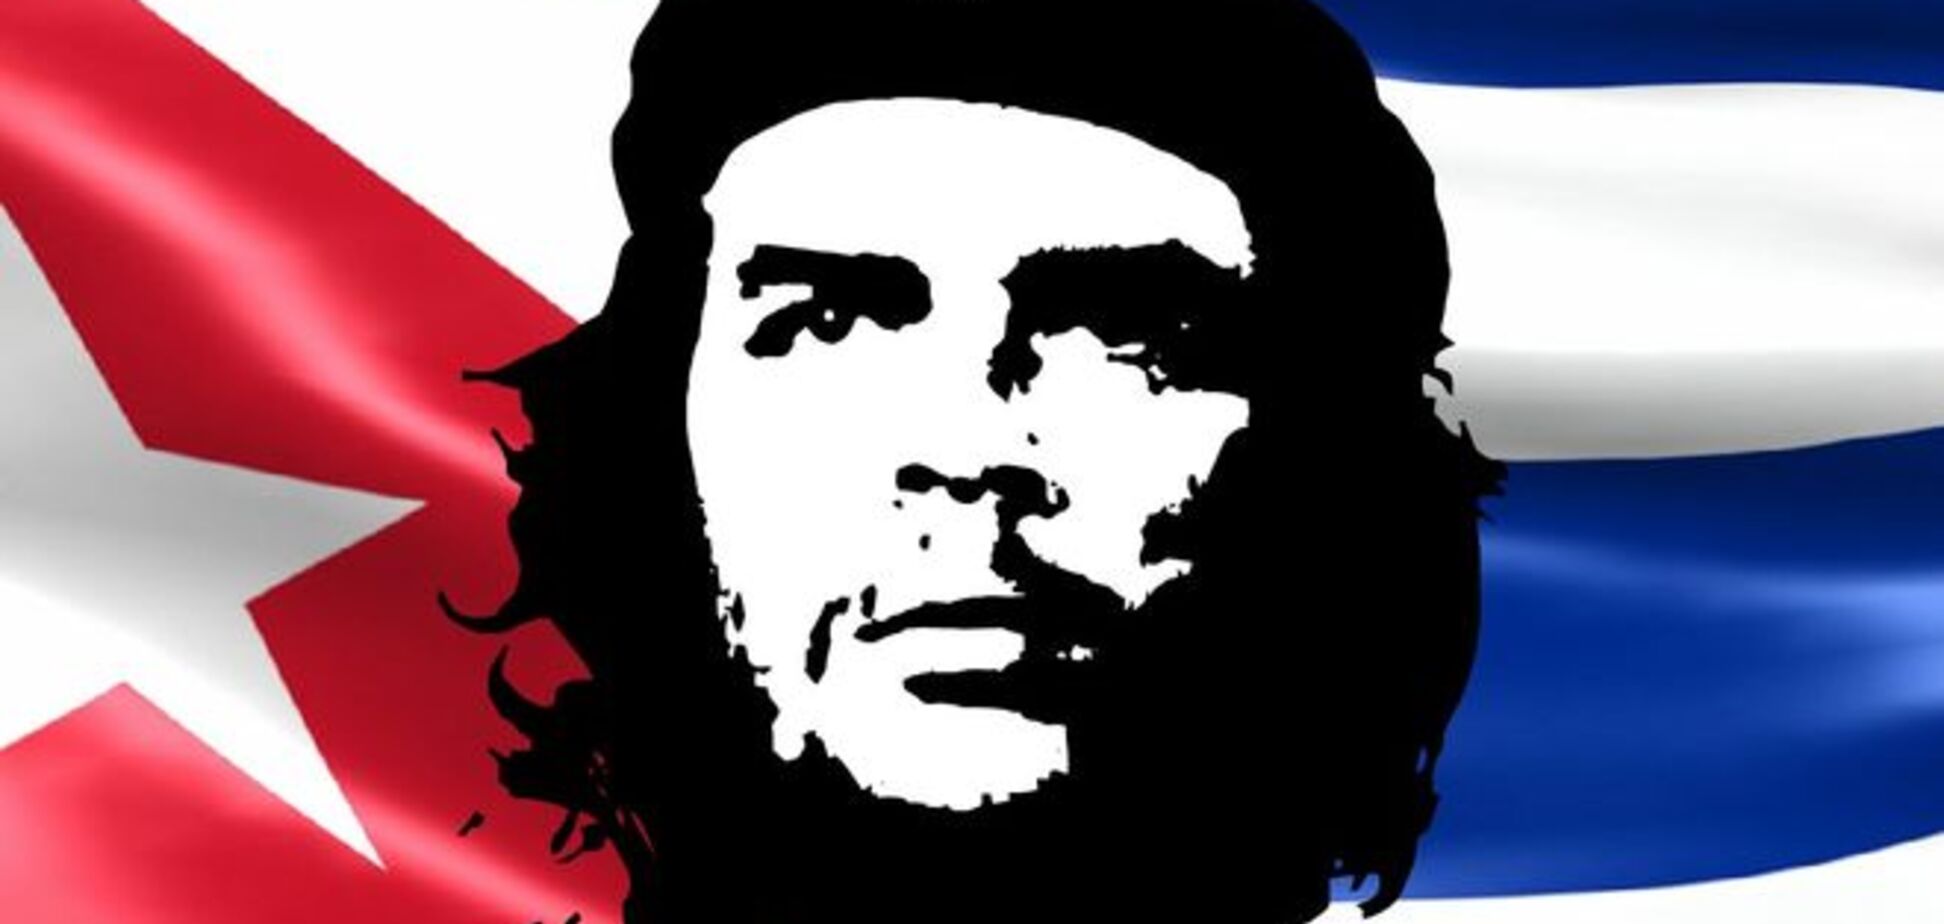 День рождения Че Гевары: фото и лучшие цитаты легендарного революционера